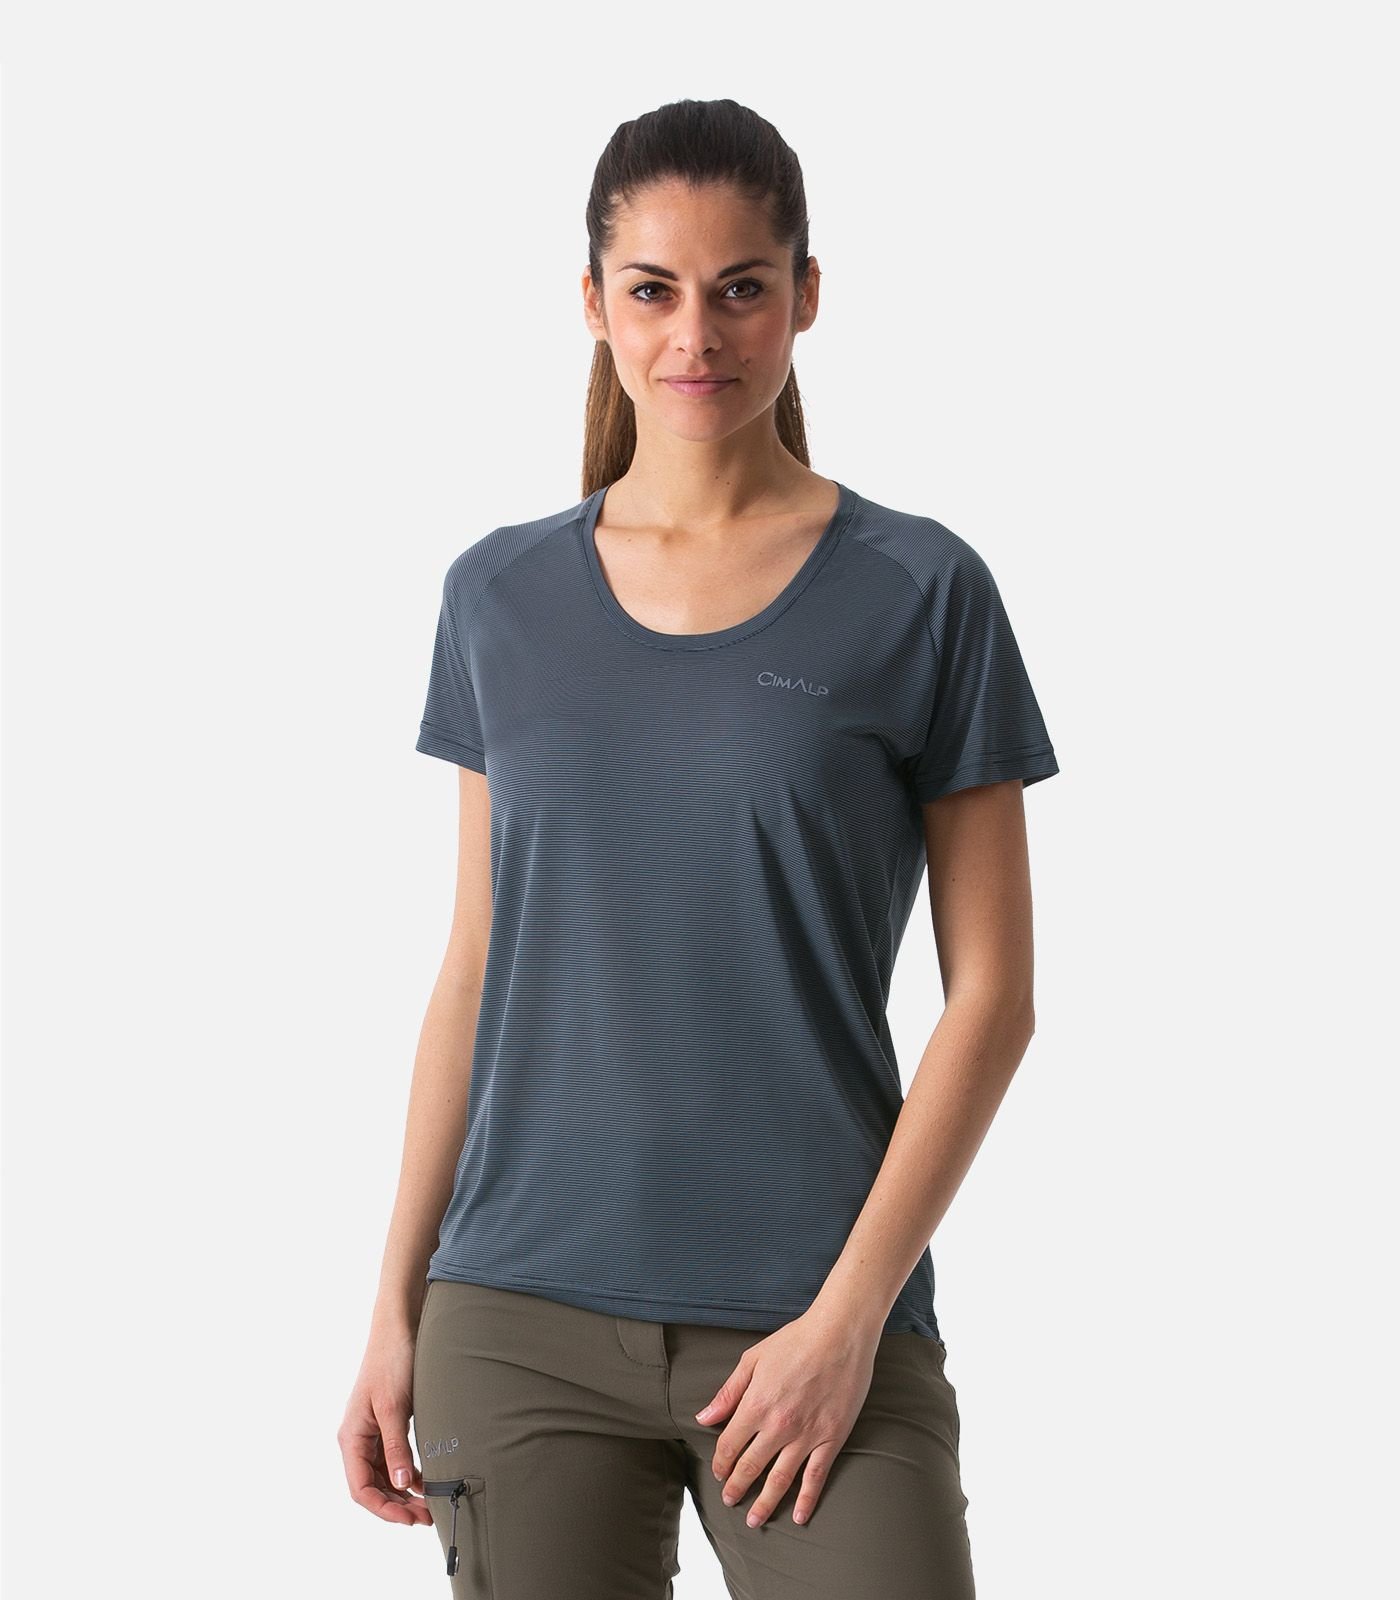 Camiseta ligera y transpirable con tecnología CIMAFRESH®